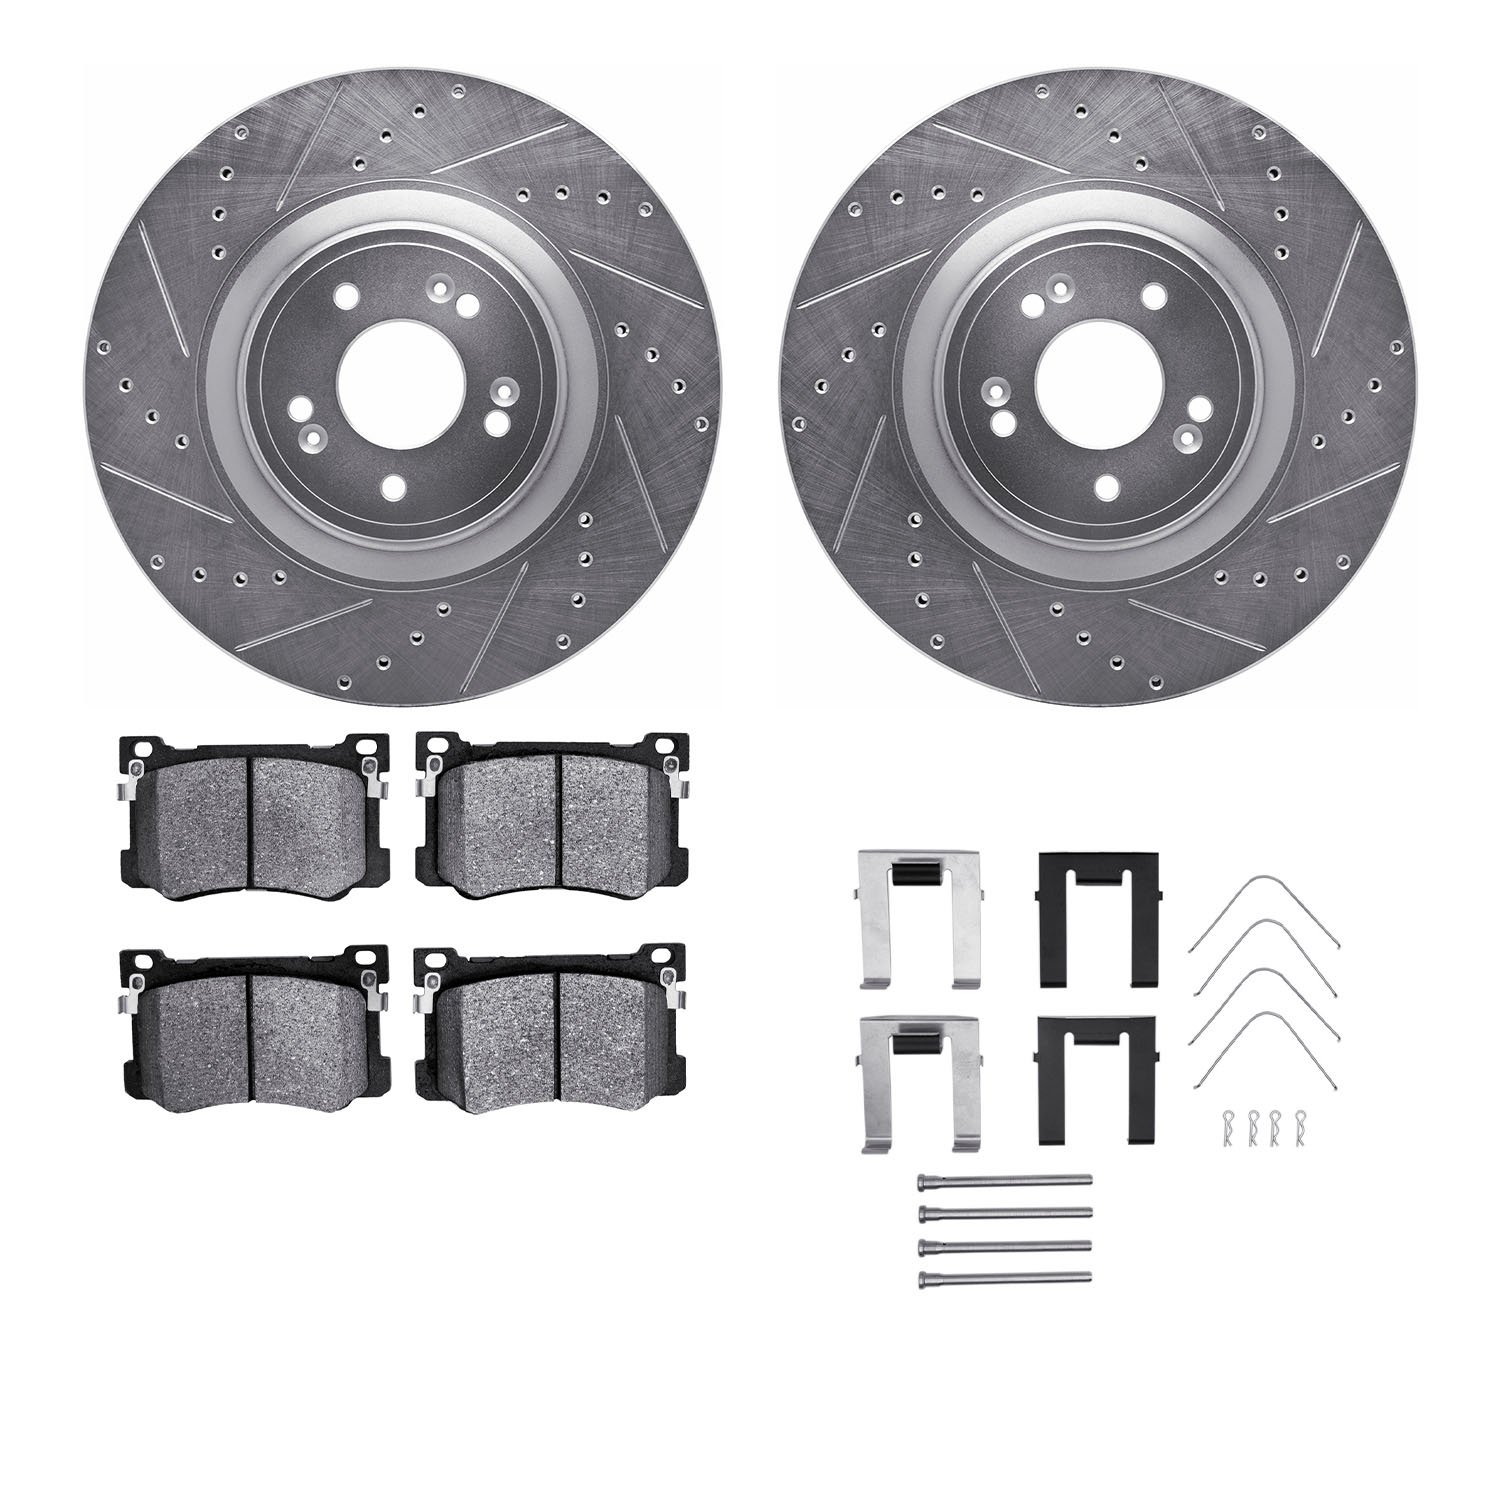 7312-03104 Drilled/Slotted Brake Rotor with 3000-Series Ceramic Brake Pads Kit & Hardware [Silver], 2018-2020 Kia/Hyundai/Genesi